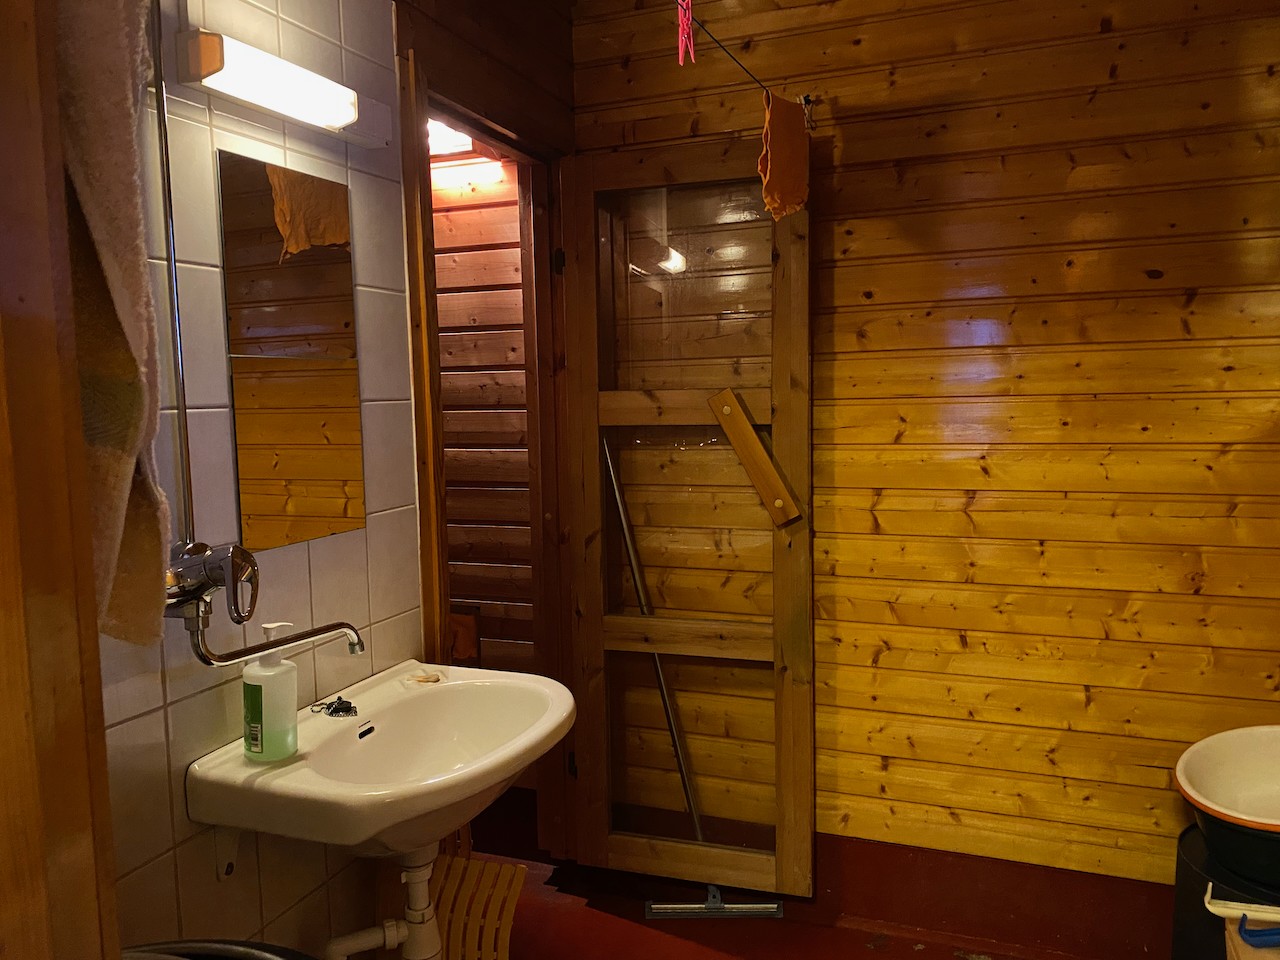 Pesuhuone, josta käynti saunaan.